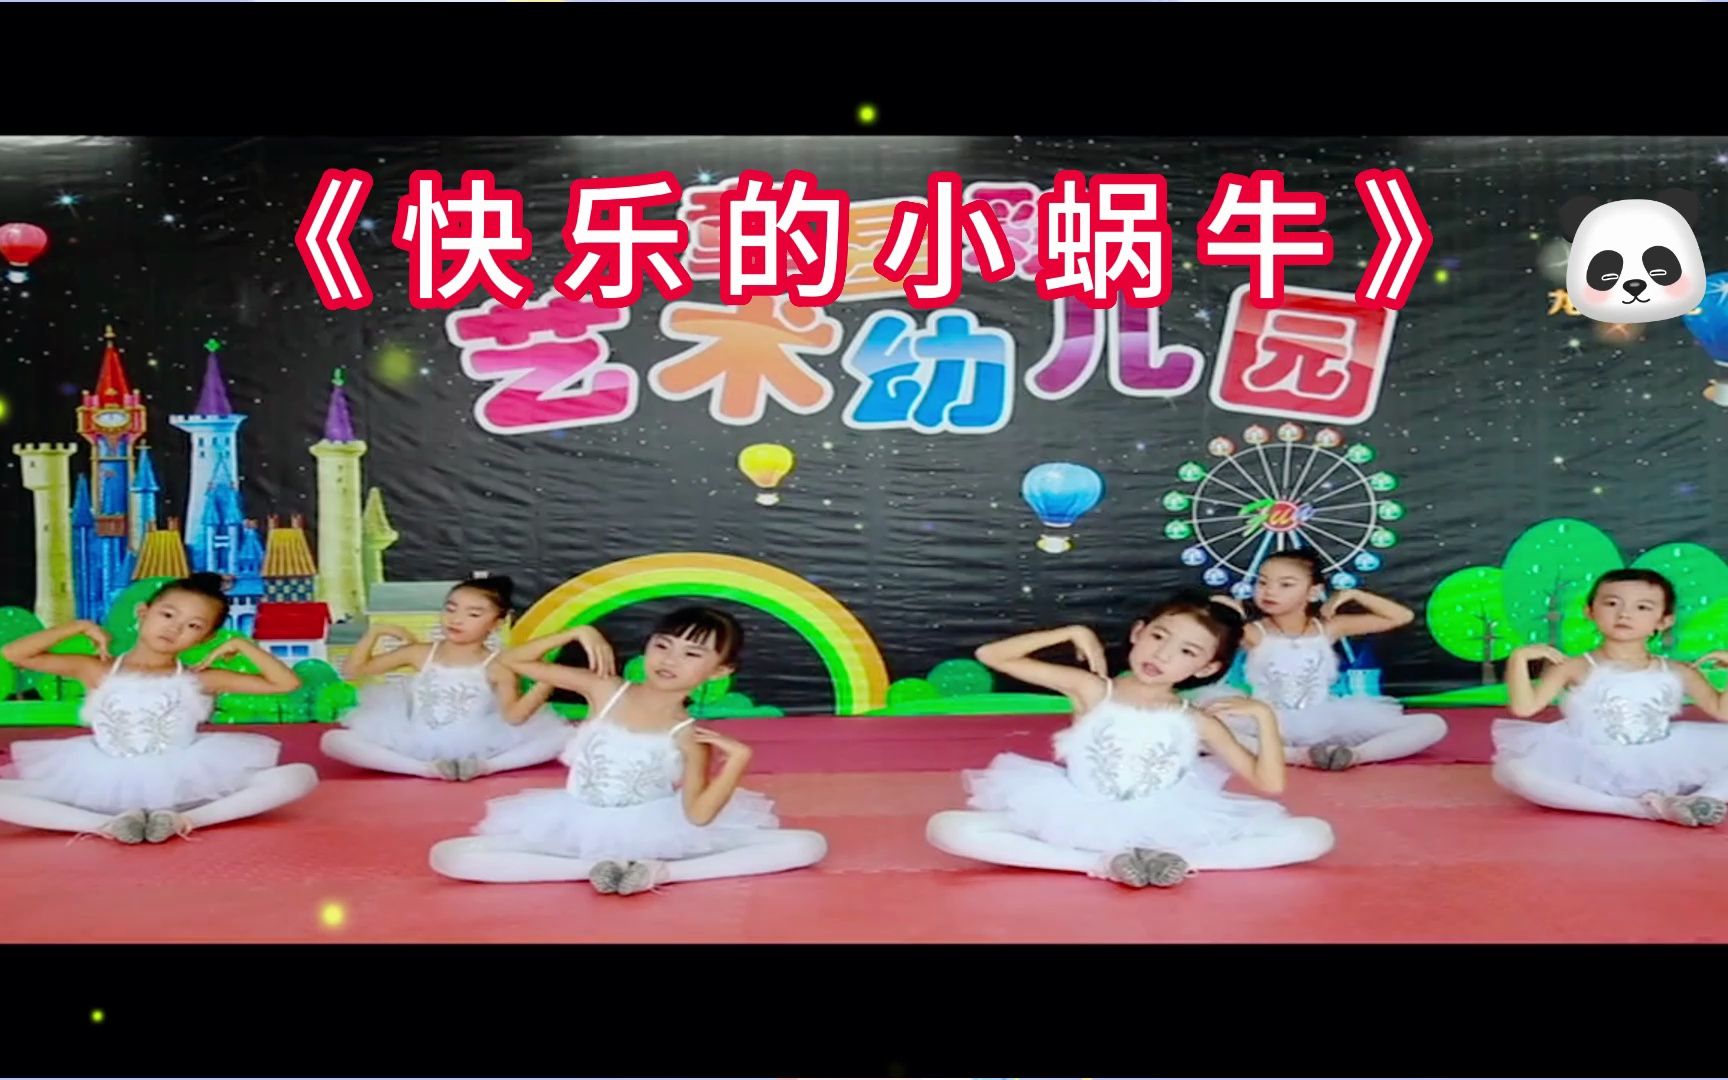 影音视频访问链接以下链接为影音视频儿童舞蹈《快乐的小蜗牛》幼儿